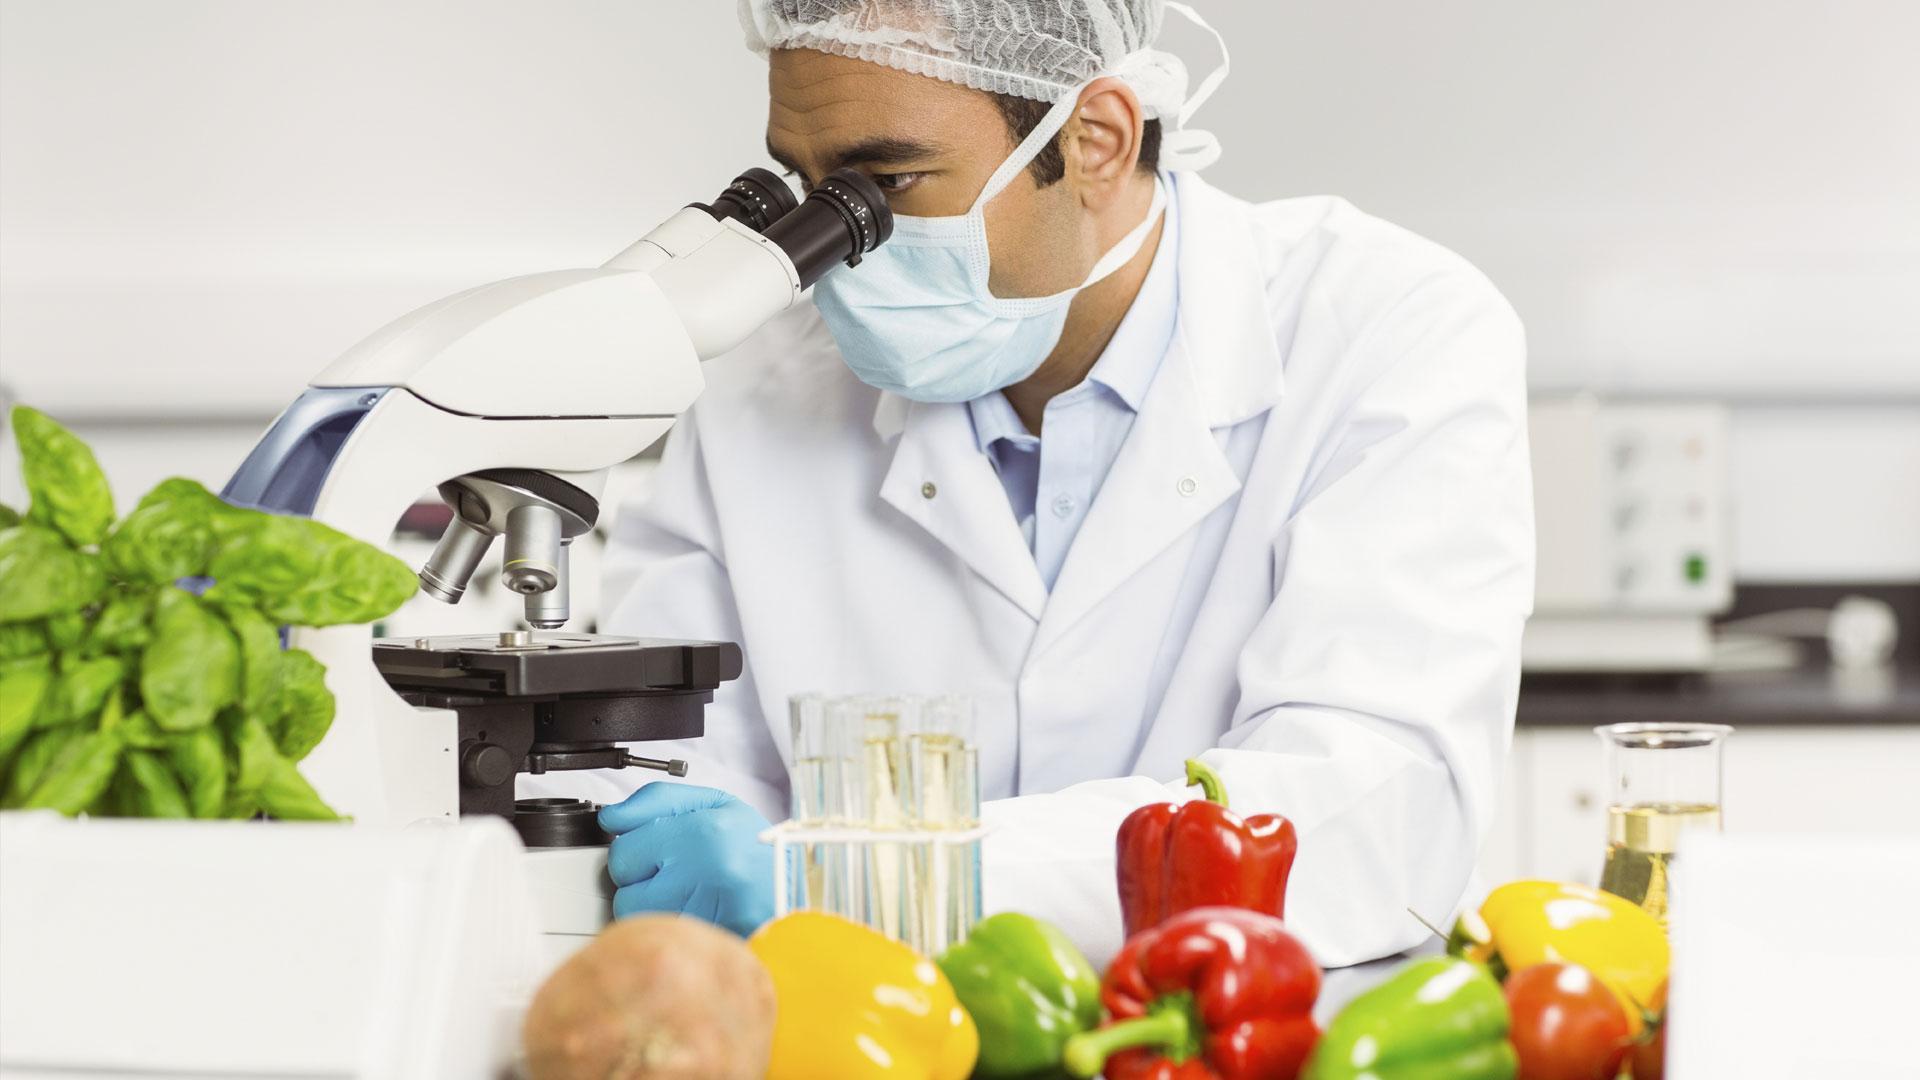 Оценка качества пищевых продуктов. Овощи в лаборатории. Исследование пищевых продуктов. Контроль качества пищевых продуктов. Лабораторные исследования продуктов.